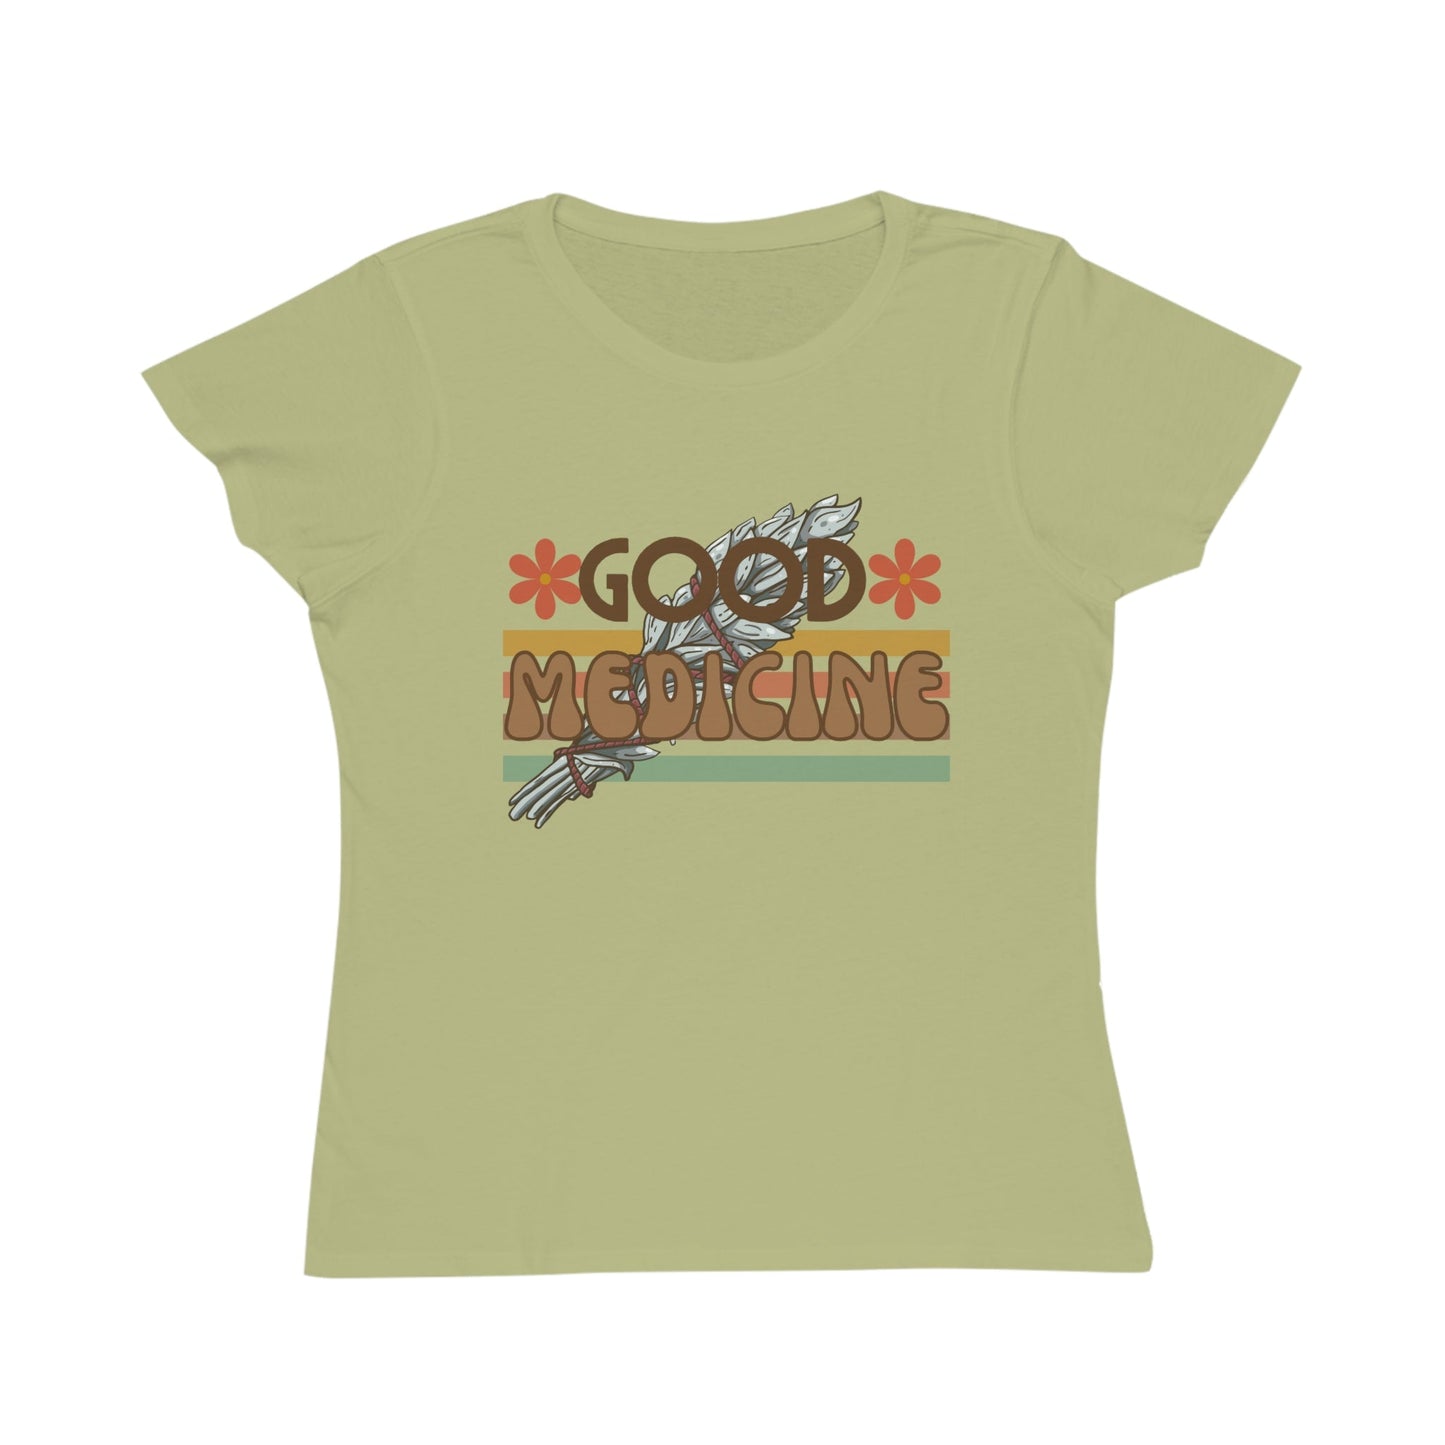 Organic Cotton Ecco Friendly Native Women's Classic T-Shirt - Nikikw Designs